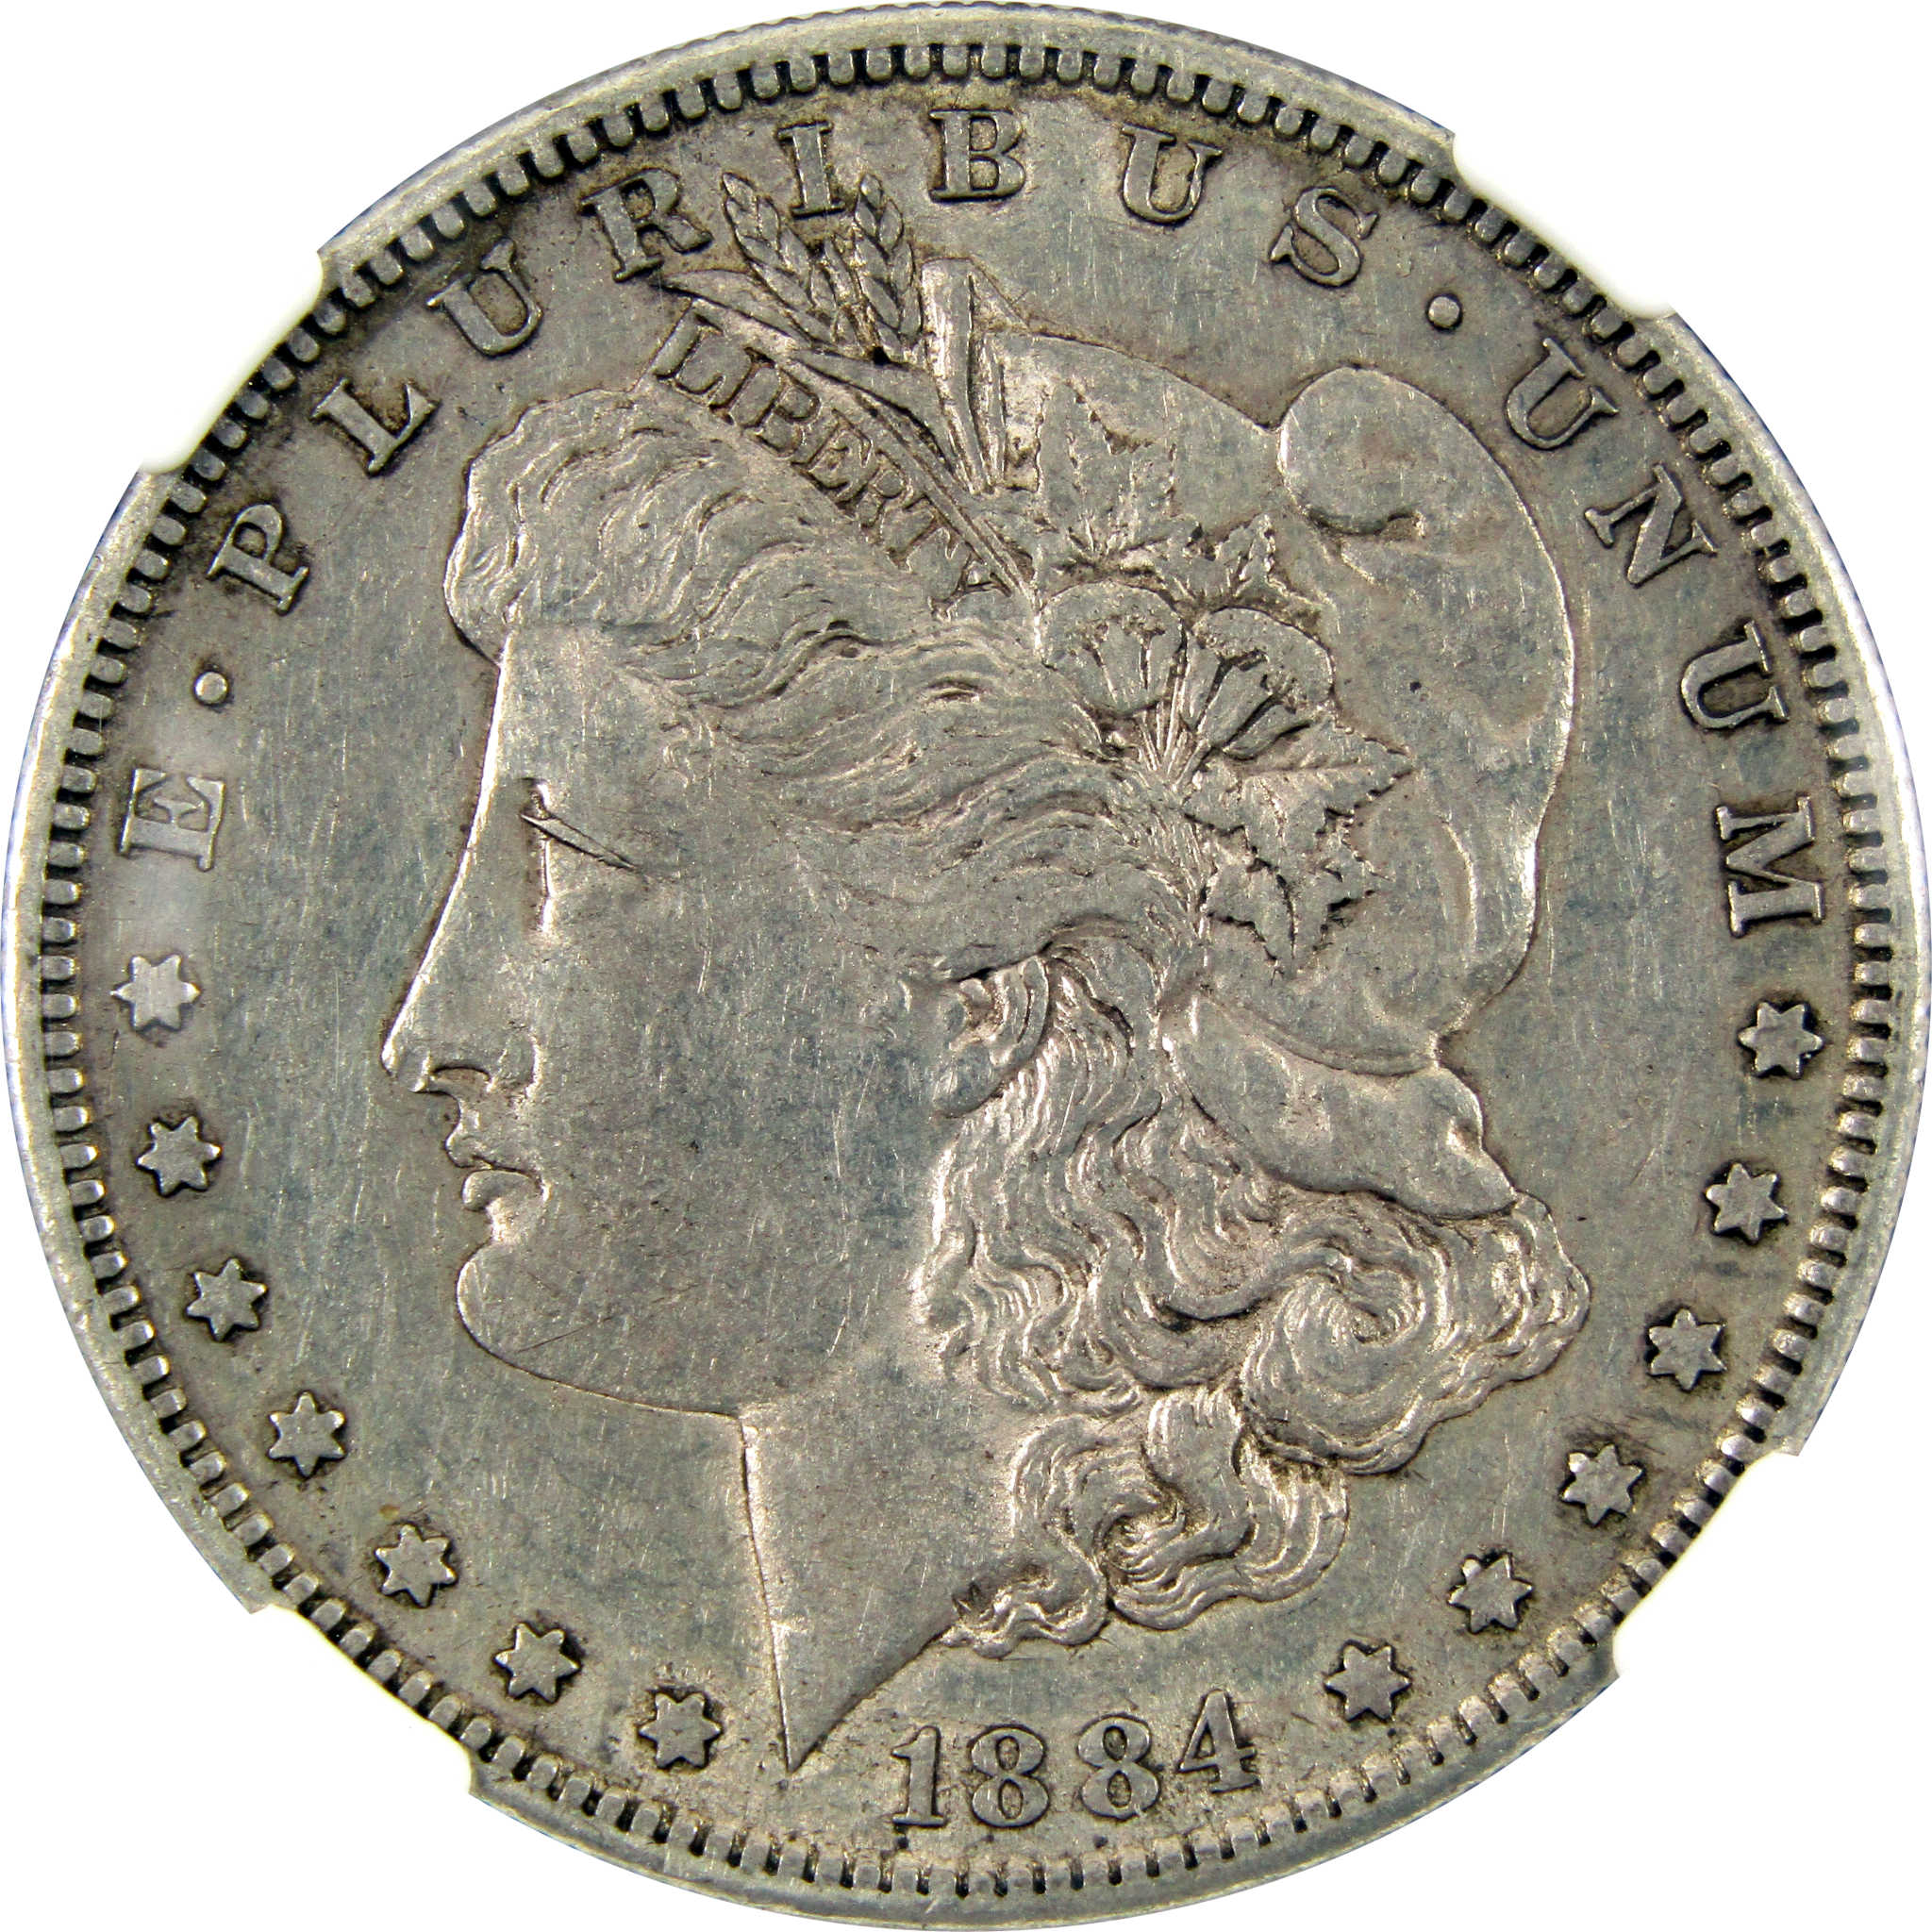 1884 S Morgan Dollar XF 45 NGC Silver $1 Coin SKU:I11016 - Morgan coin - Morgan silver dollar - Morgan silver dollar for sale - Profile Coins &amp; Collectibles